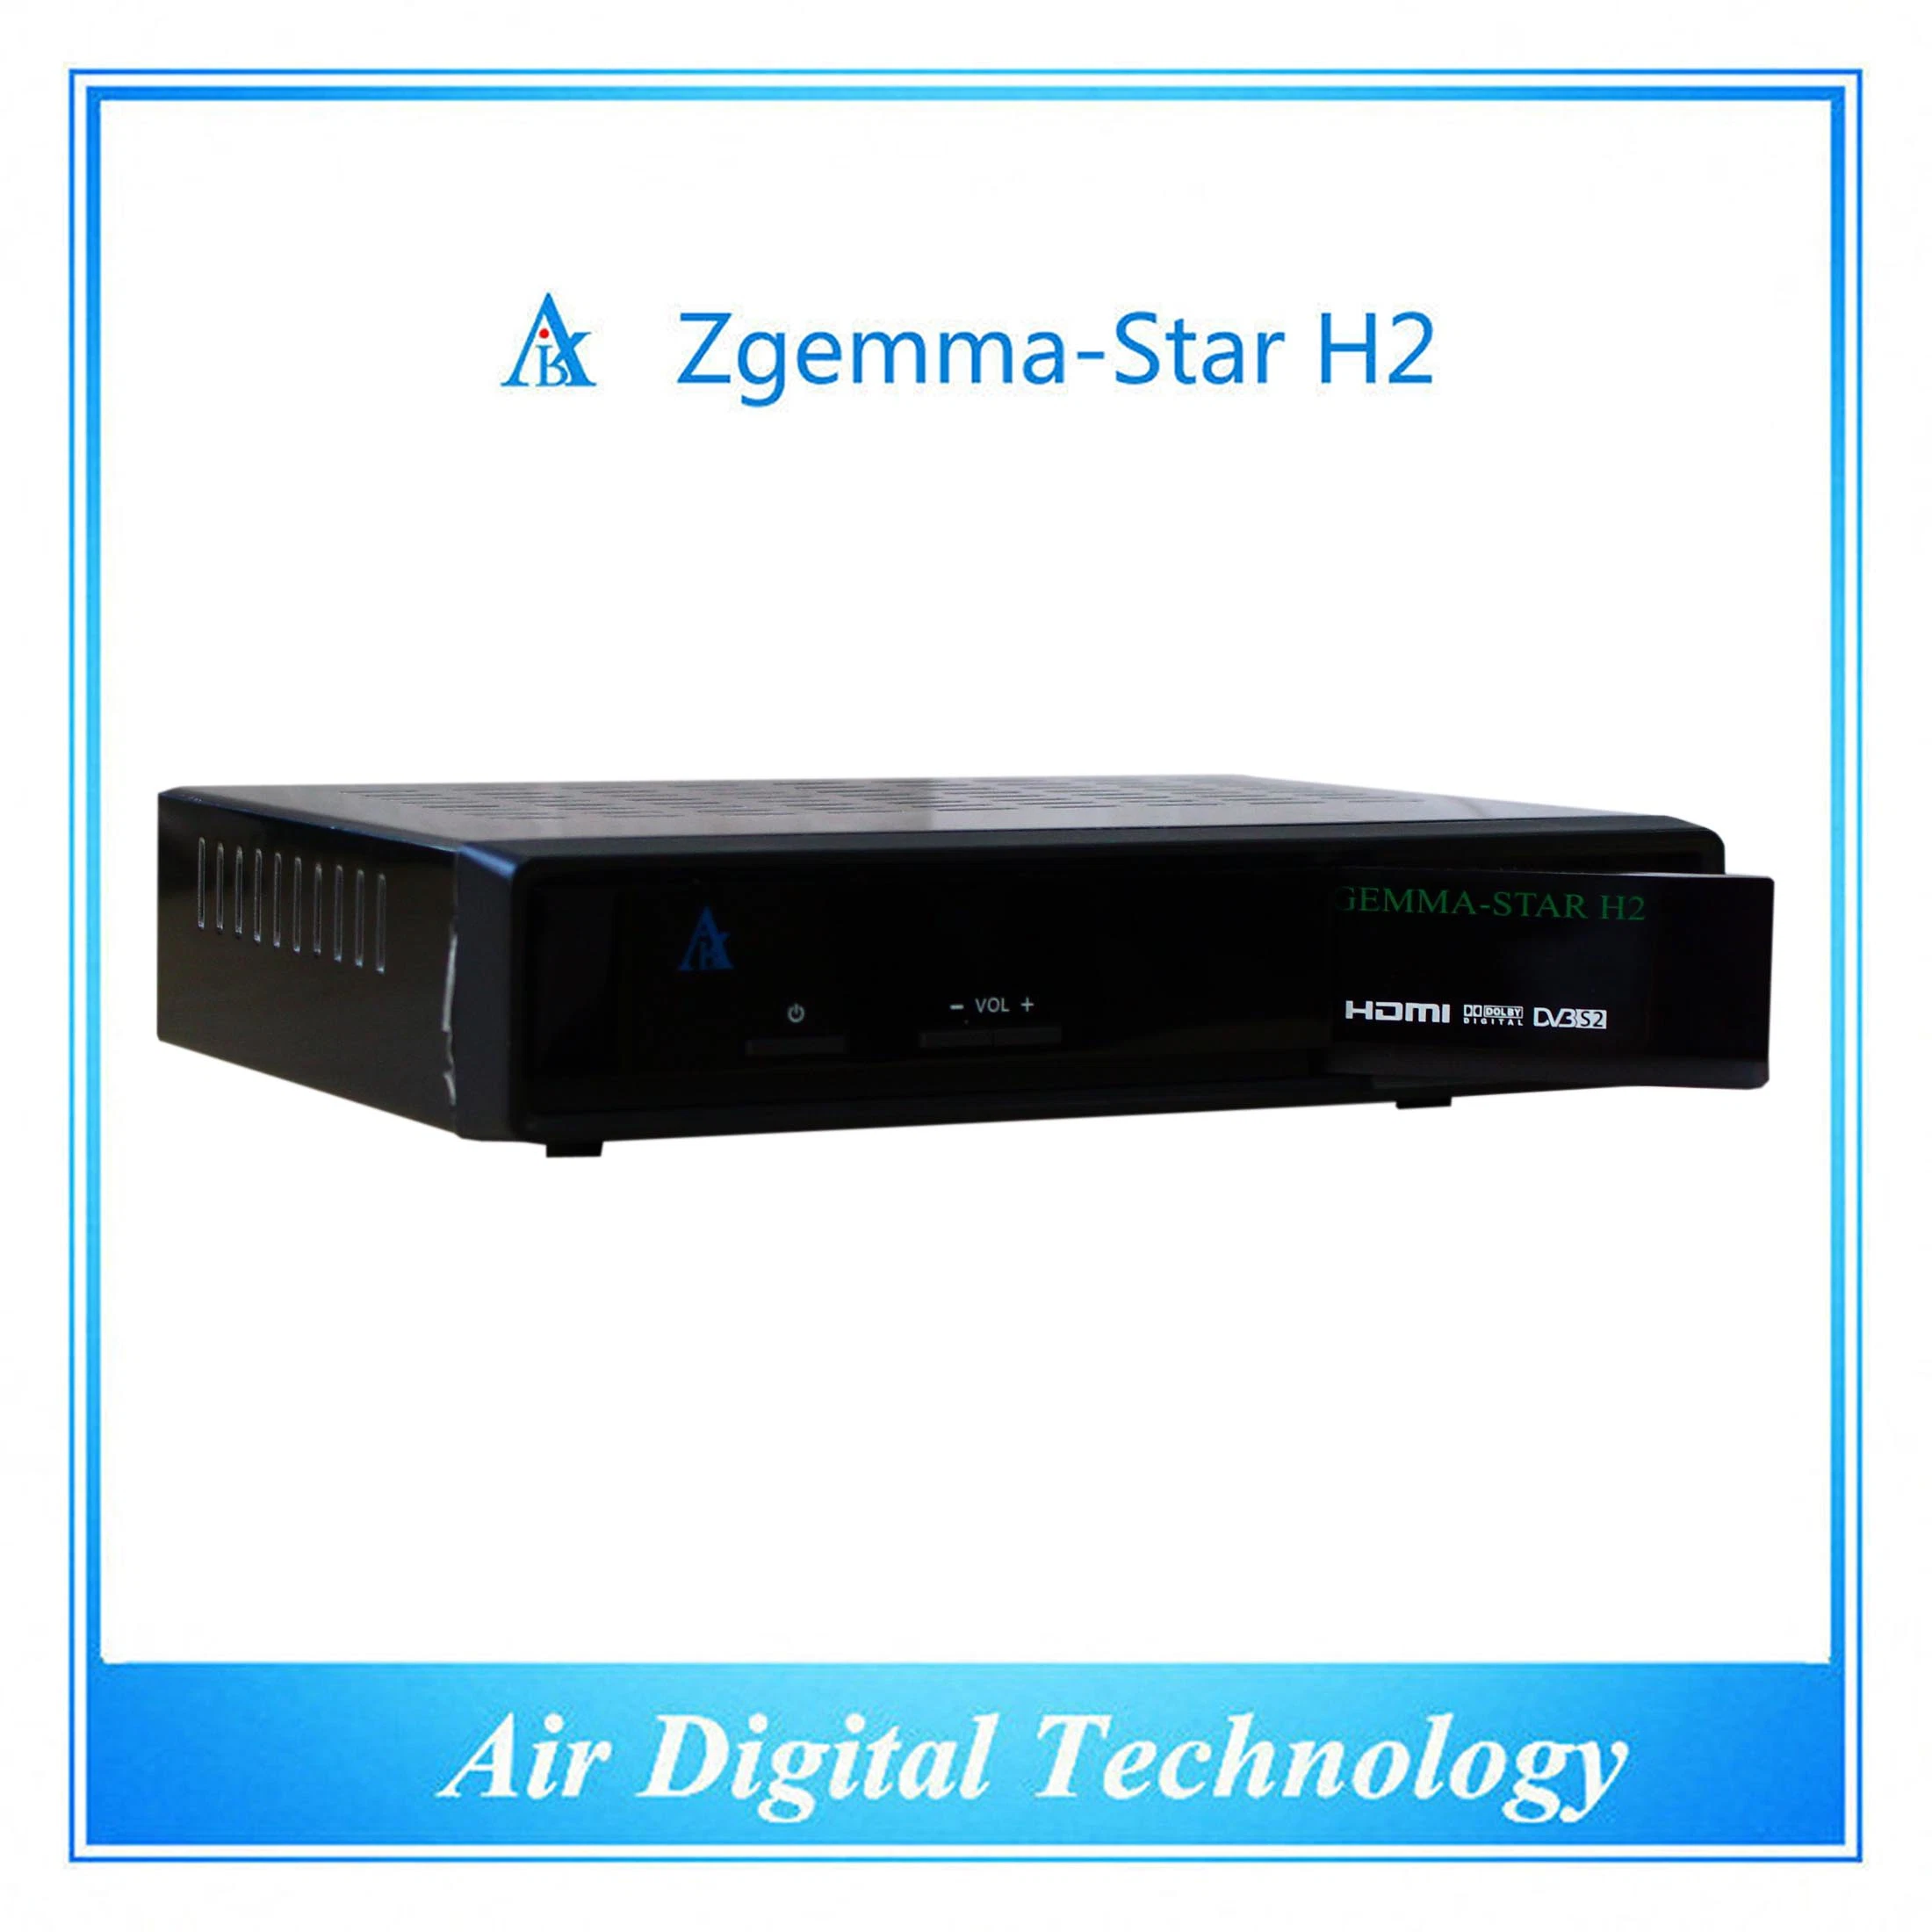 DVB T2 DVB S2/S Digital TV Receiver Zgemma-Star H2